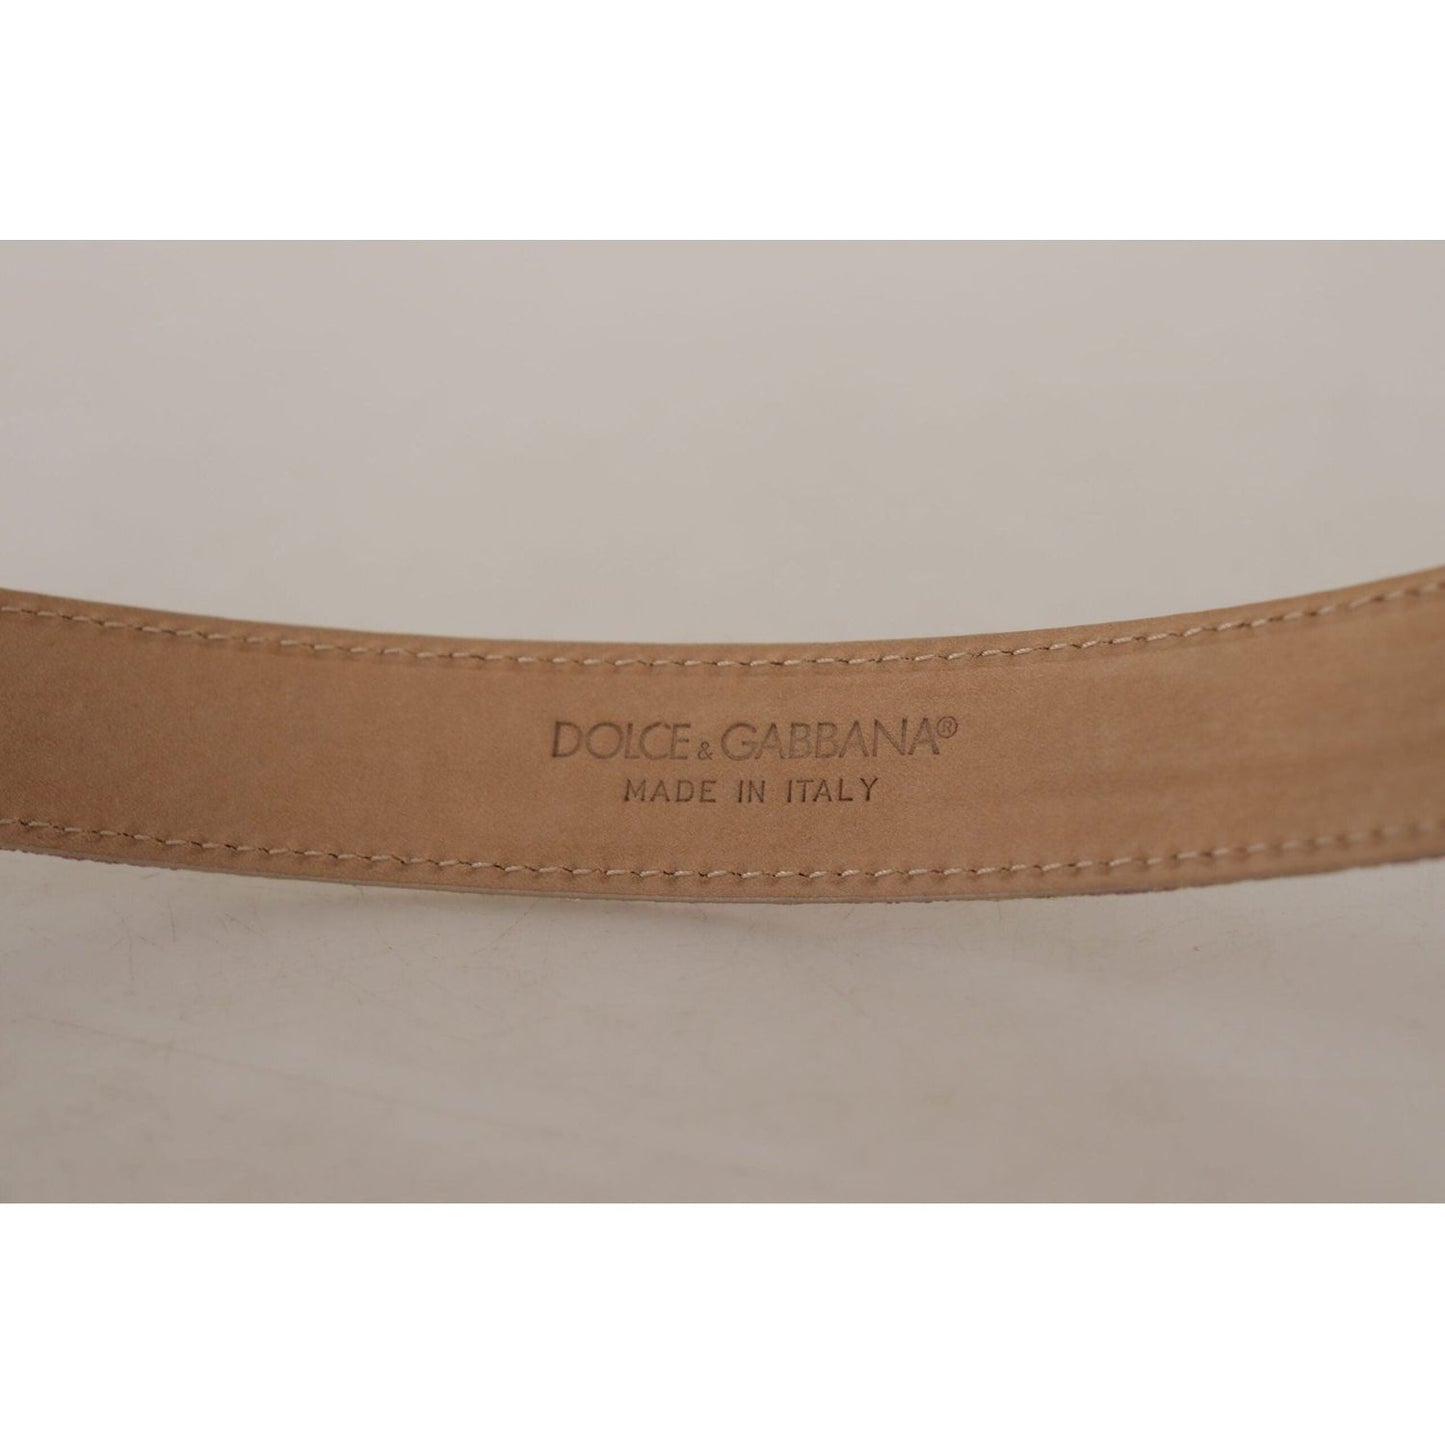 Dolce & Gabbana Chic Gold and Pink Leather Belt rose-pink-jacquard-dg-logo-gold-metal-buckle-belt